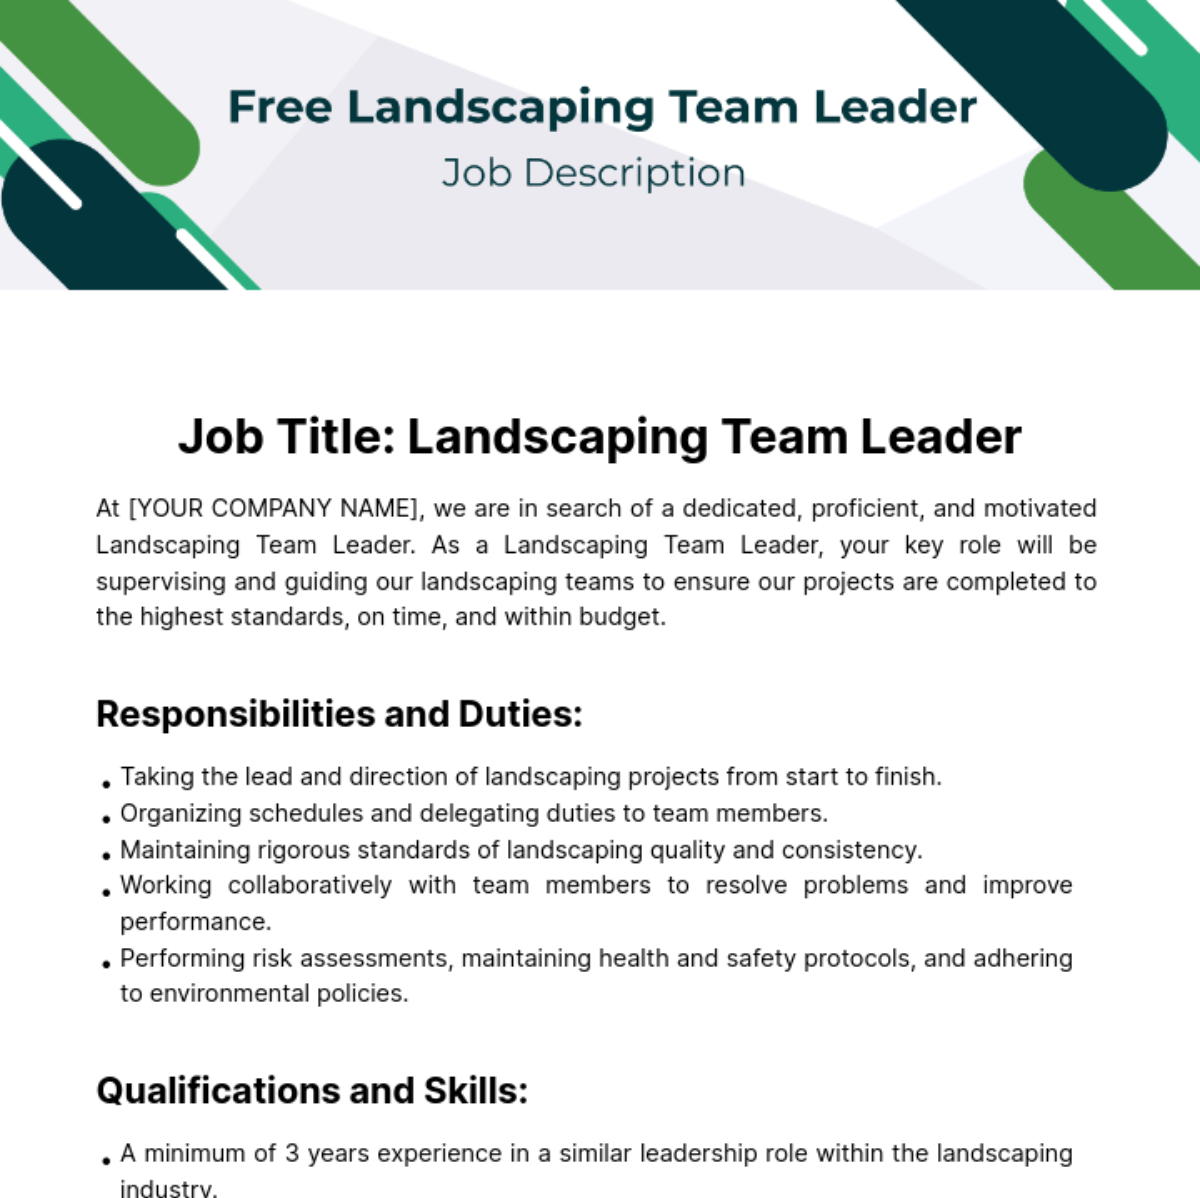 Landscaping Teal Leader Job Description Template